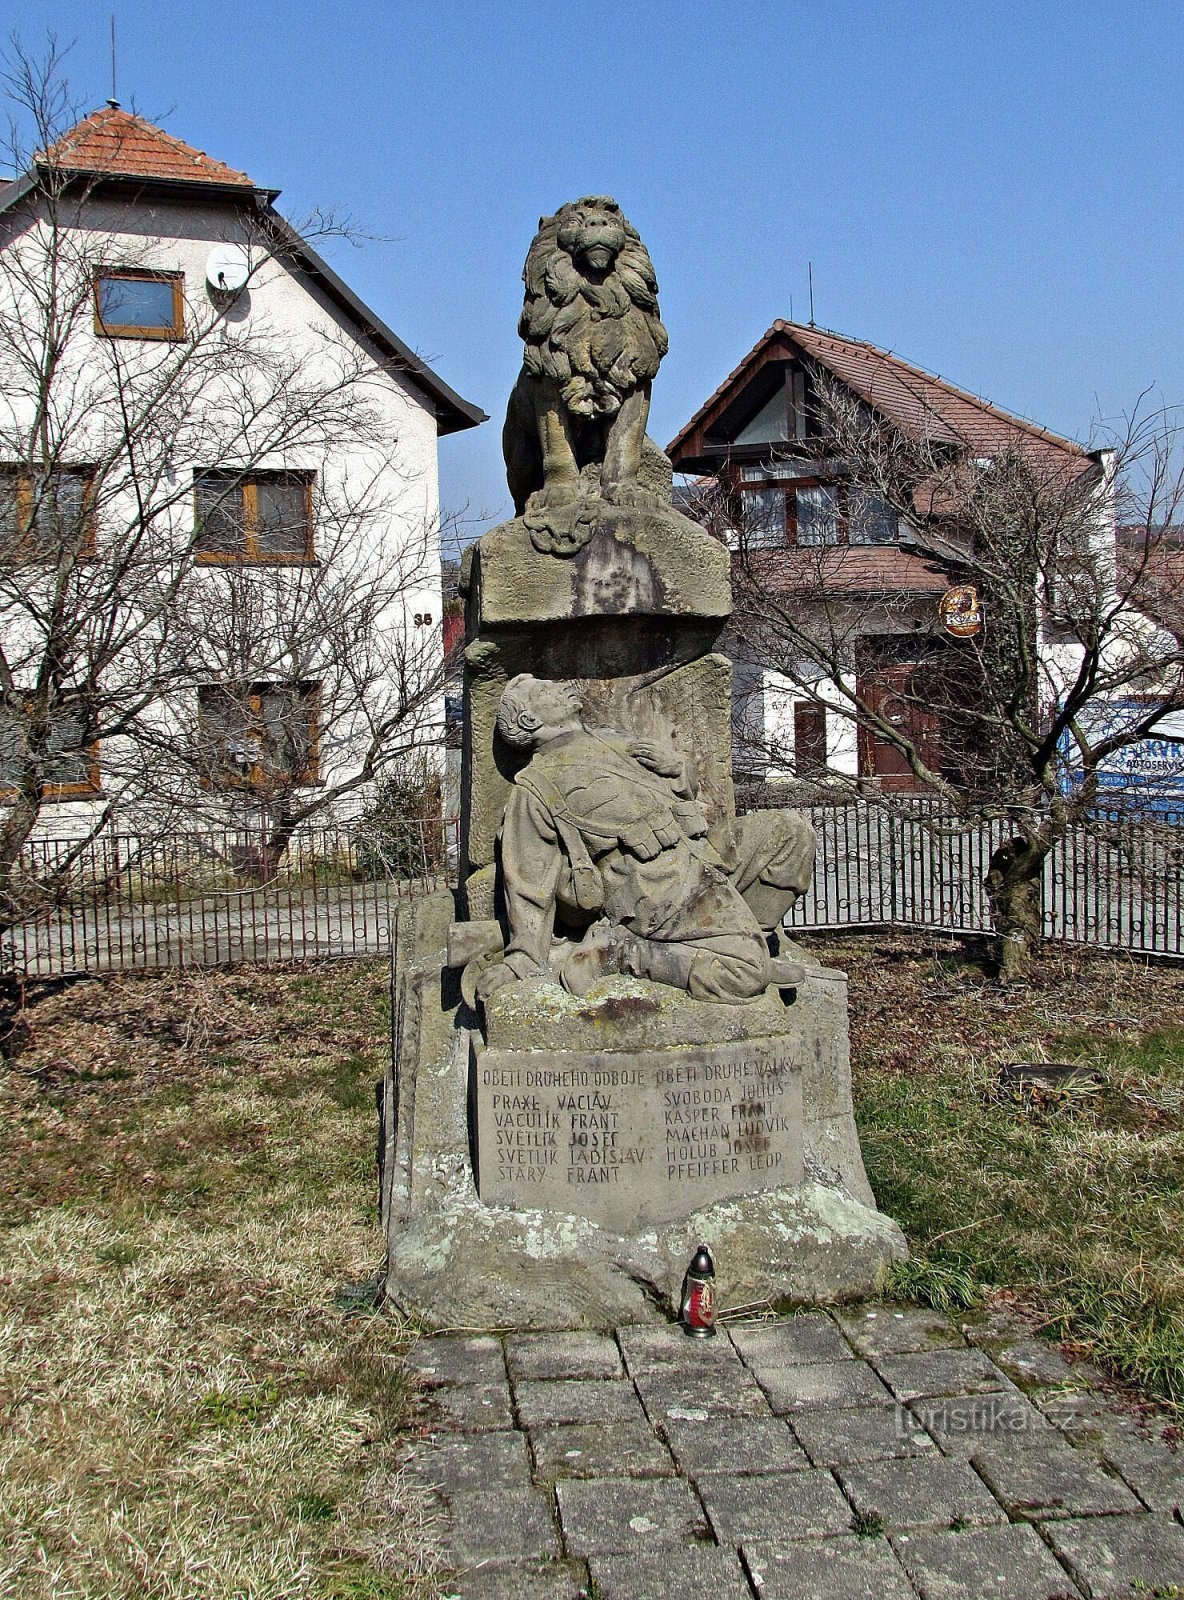 Đài tưởng niệm Želechovice cho những người chết trong cả hai cuộc chiến tranh thế giới